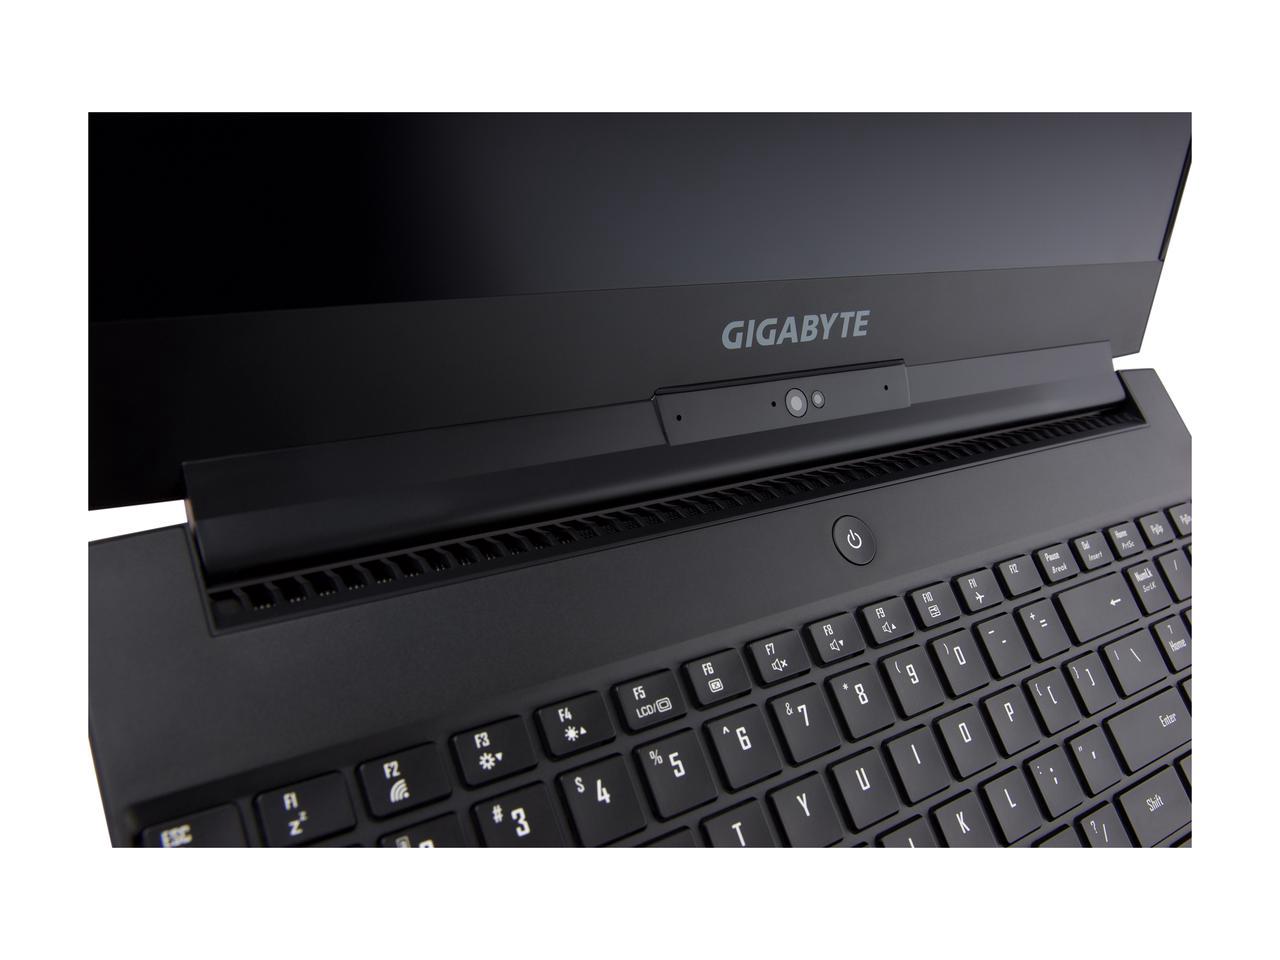 Gigabyte Aero 15 - Laptop siêu mỏng cấu hình khủng đang gây “sốt”